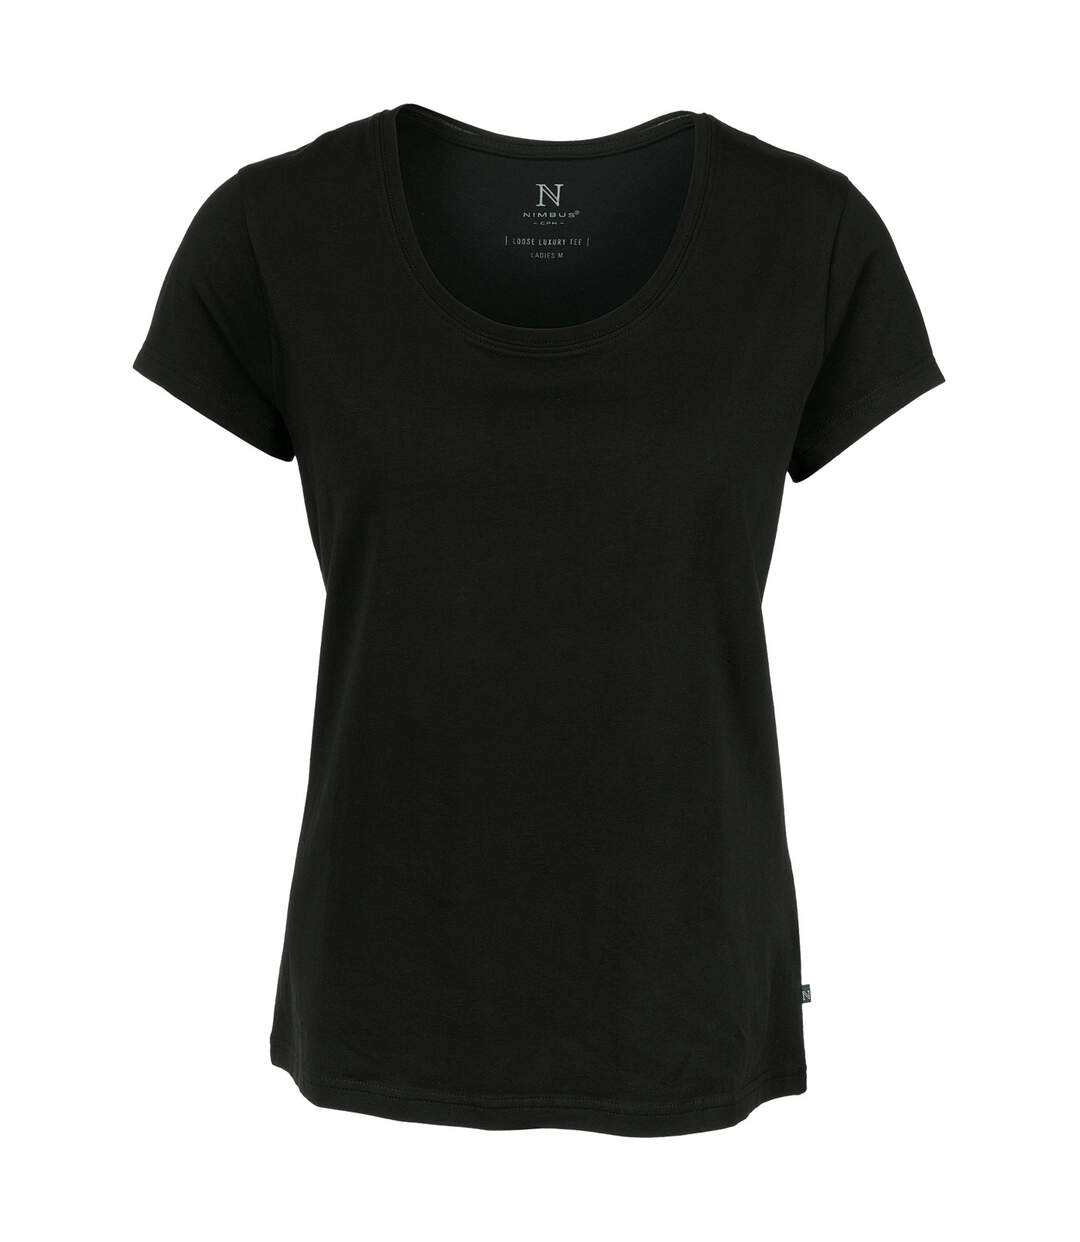 Nimbus Montauk - T-shirt à manches courtes - Femme (Noir) - UTRW5656